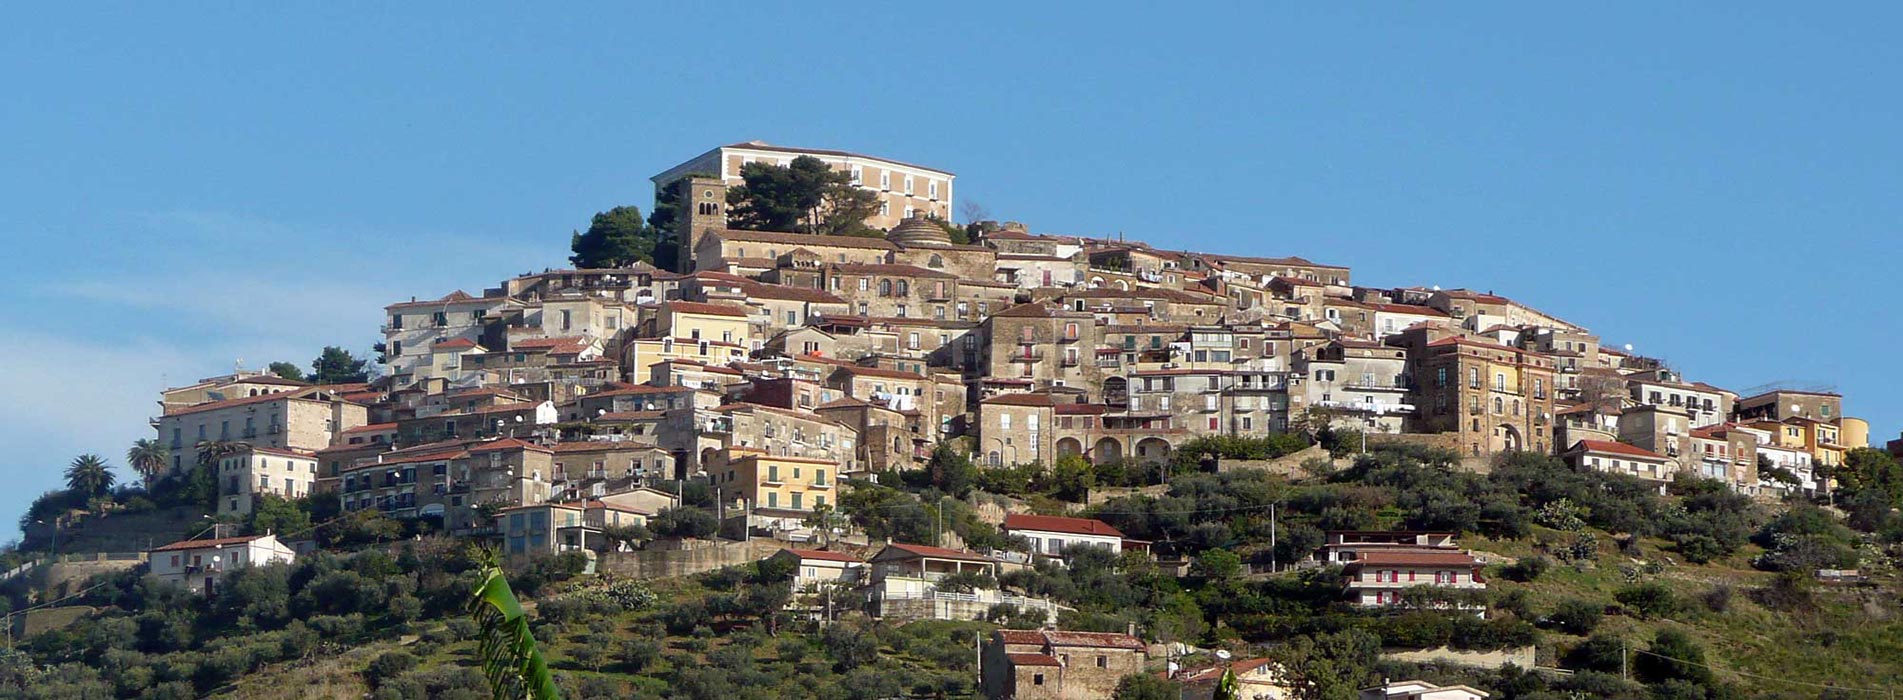 Der historische Teil des Ortes Castellabate